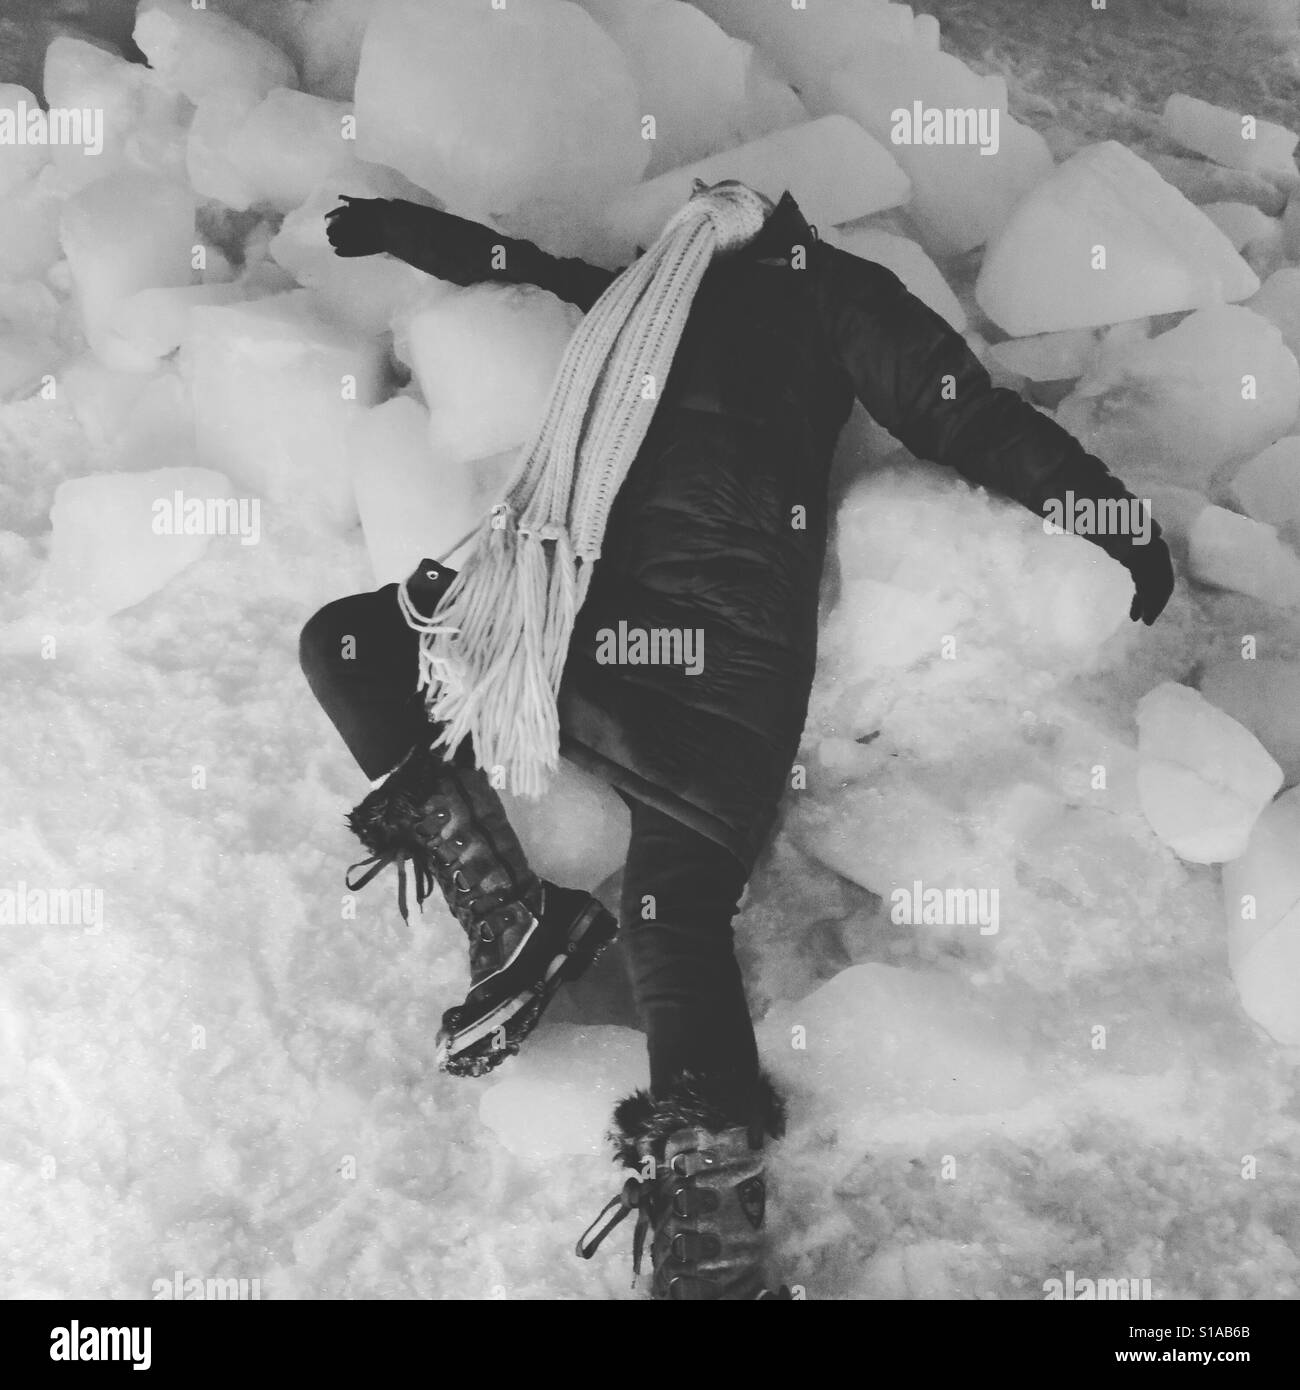 Lying on ice blocks, Iceland Stock Photo